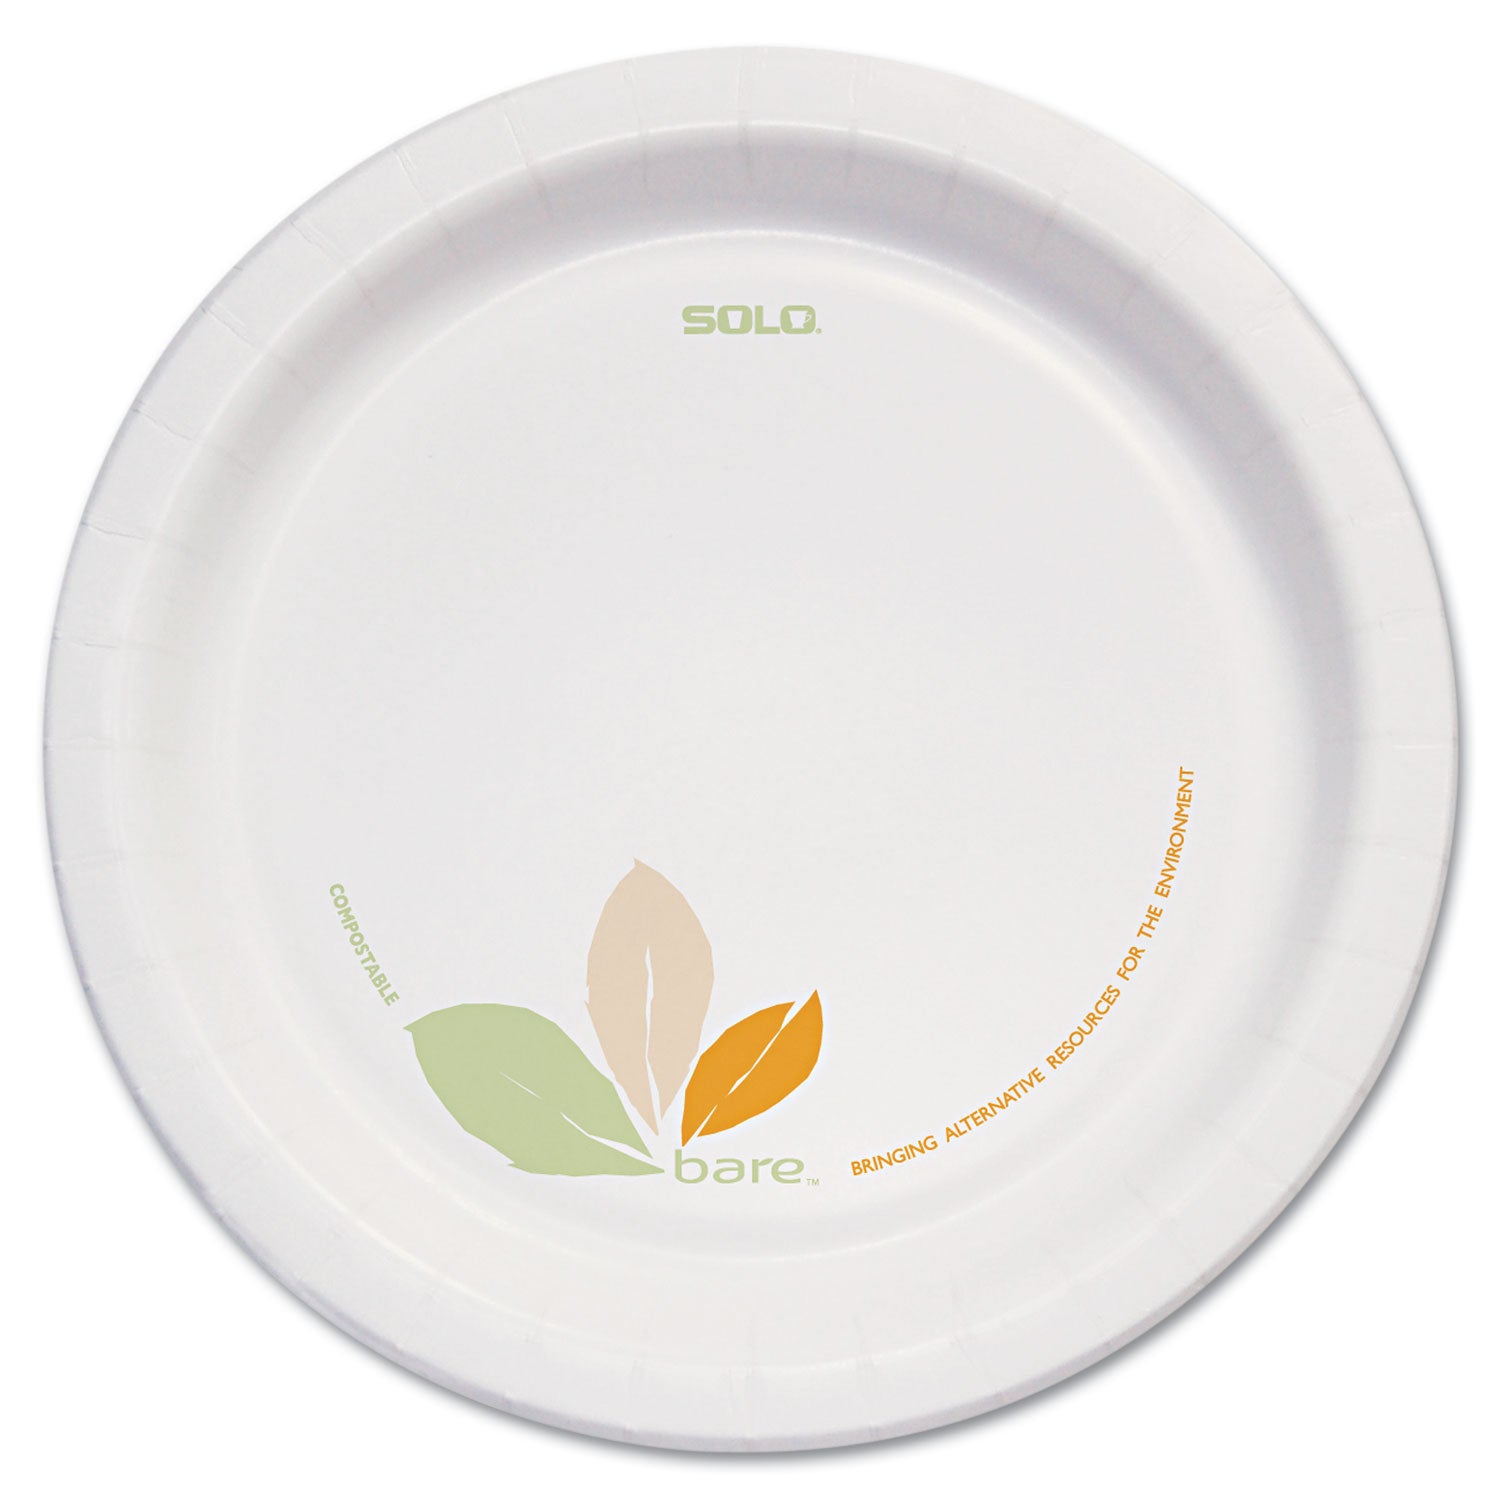 bare-eco-forward-paper-dinnerware-perfect-pak-proplanet-seal-plate-85-dia-green-tan-125-pack-2-packs-carton_sccofmp9rj7234 - 1